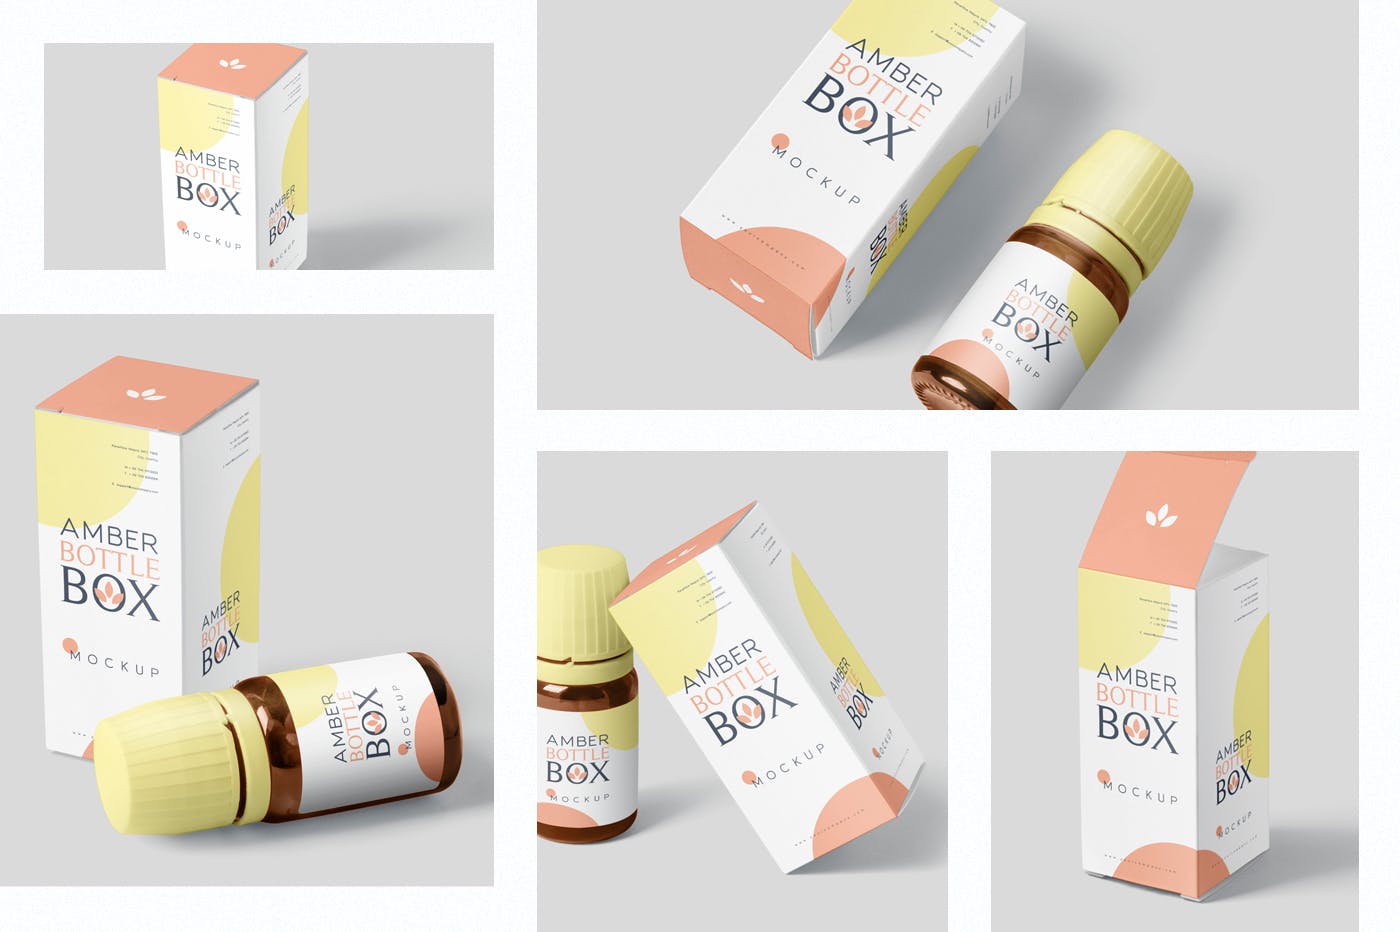 药物瓶&包装纸盒设计图第一素材精选模板 Amber Bottle Box Mockup Set插图(1)